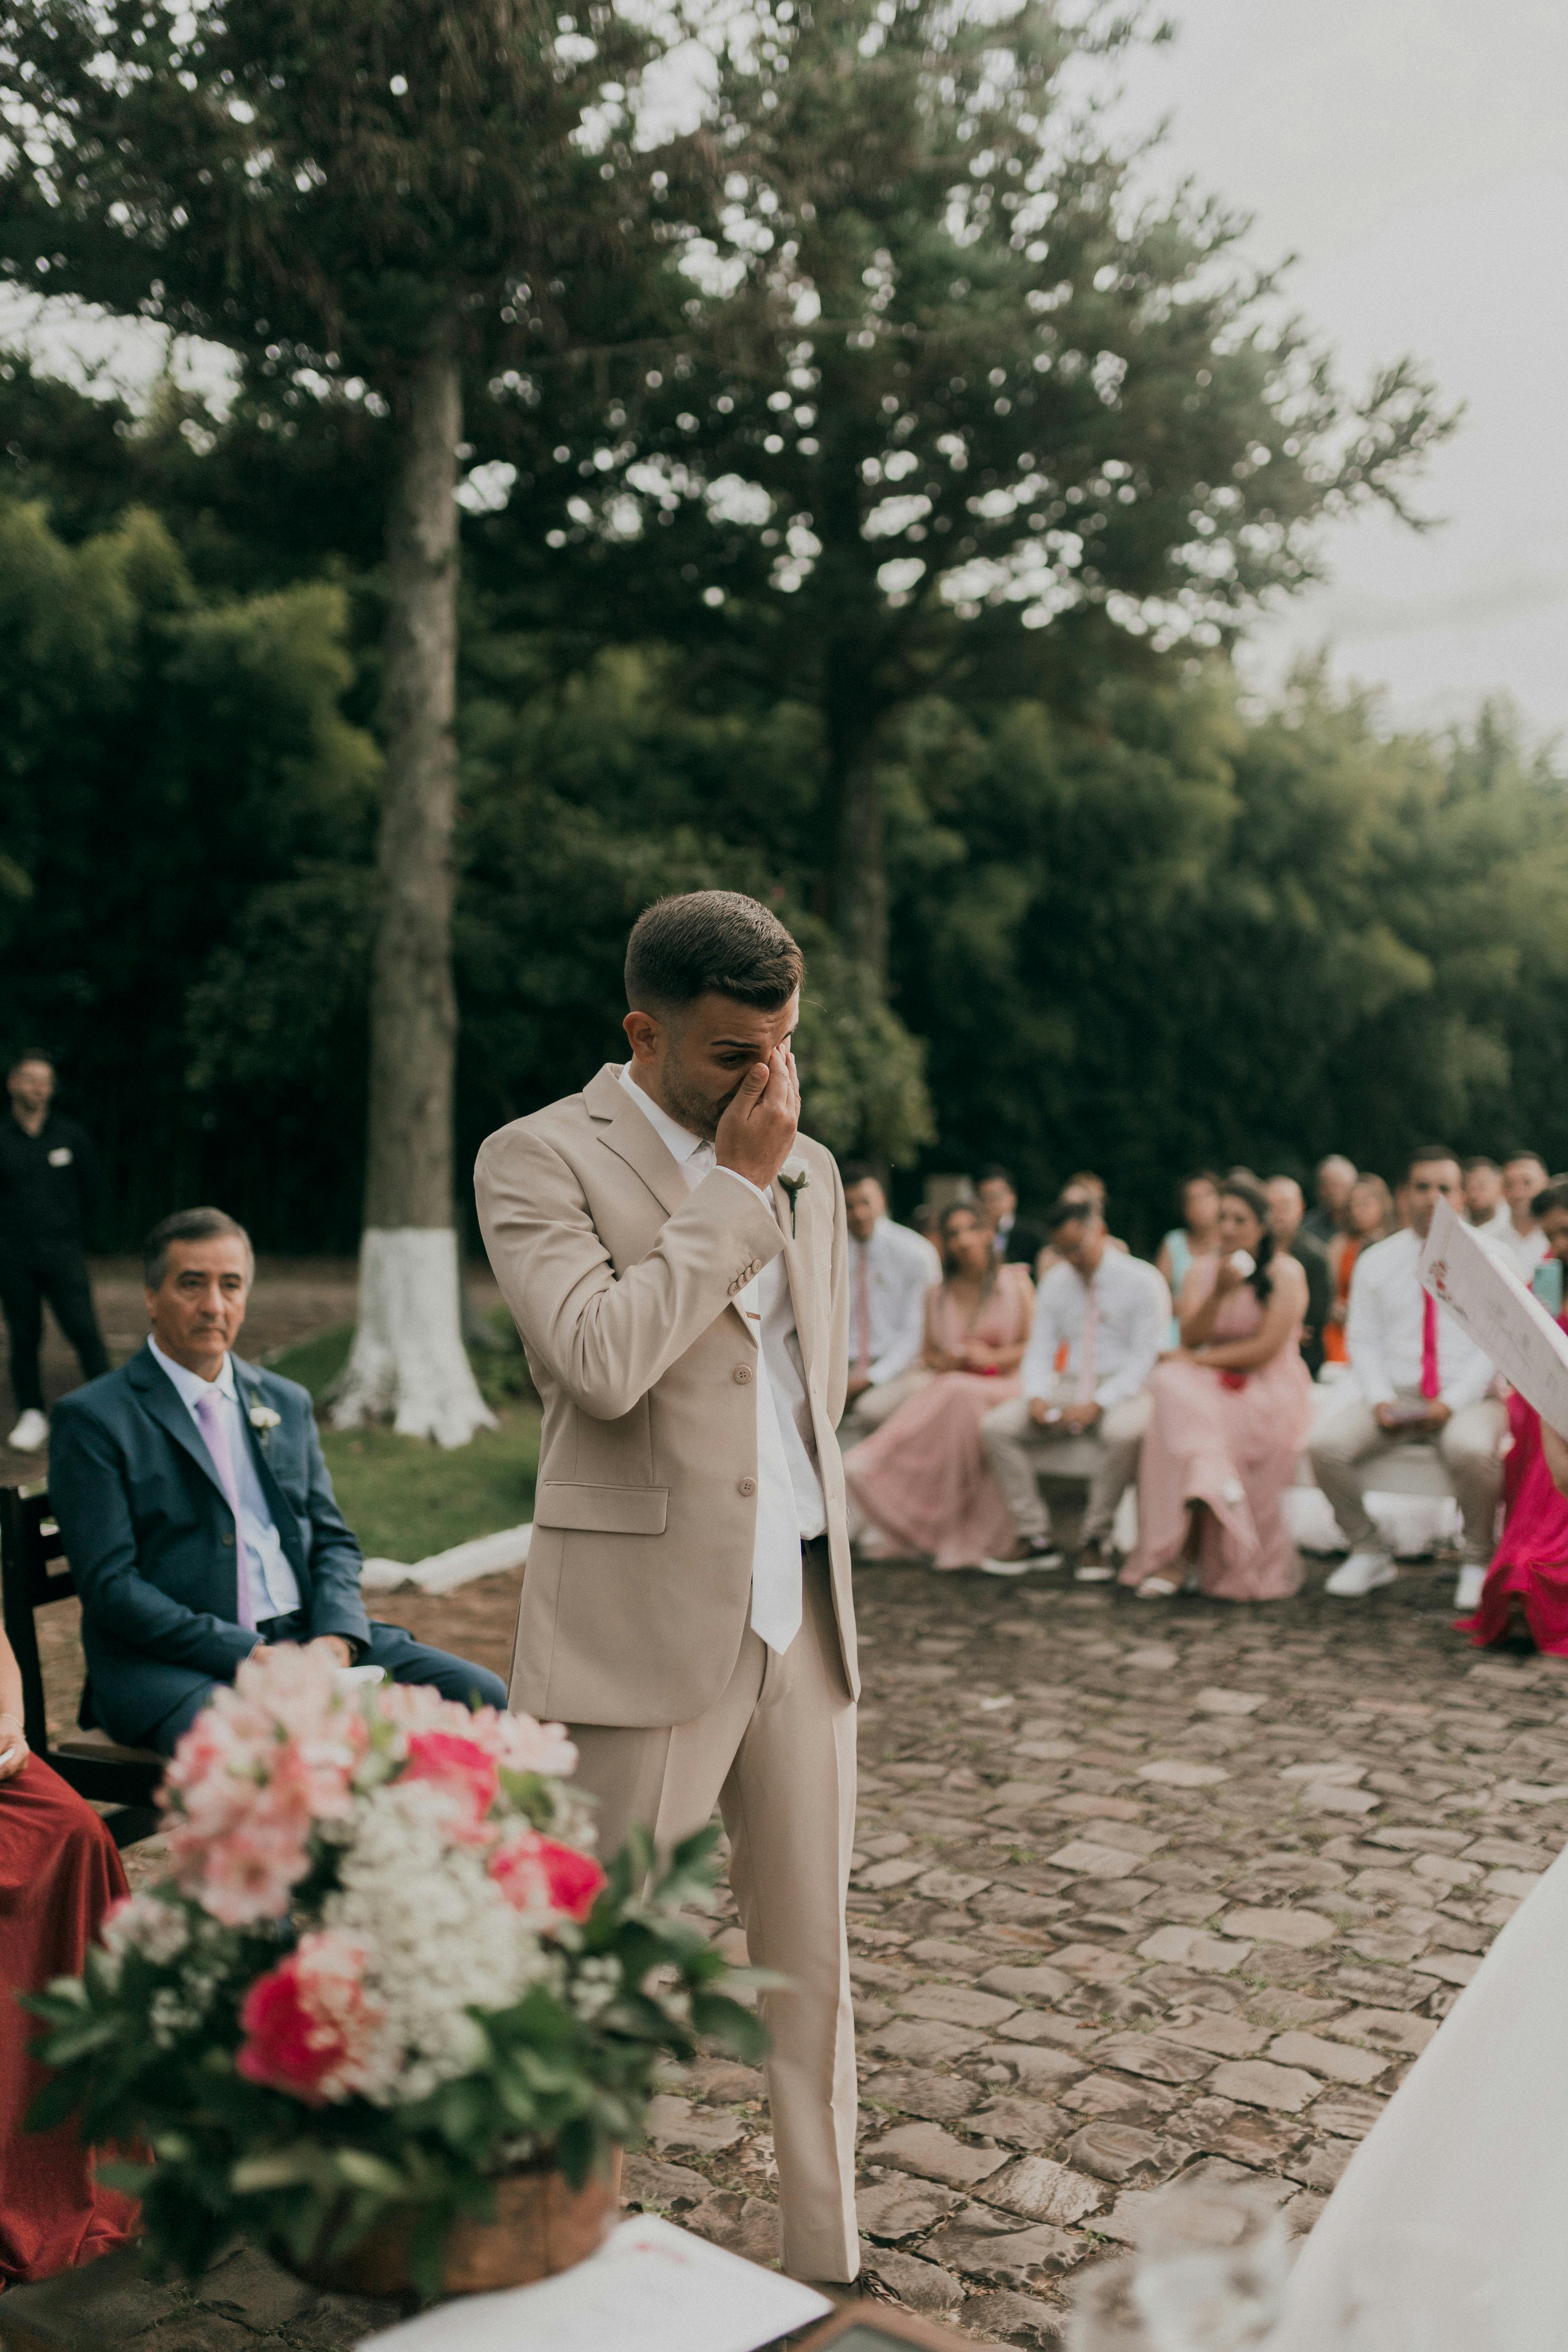 Un marié frustré et contrarié lors de son mariage | Source : Pexels